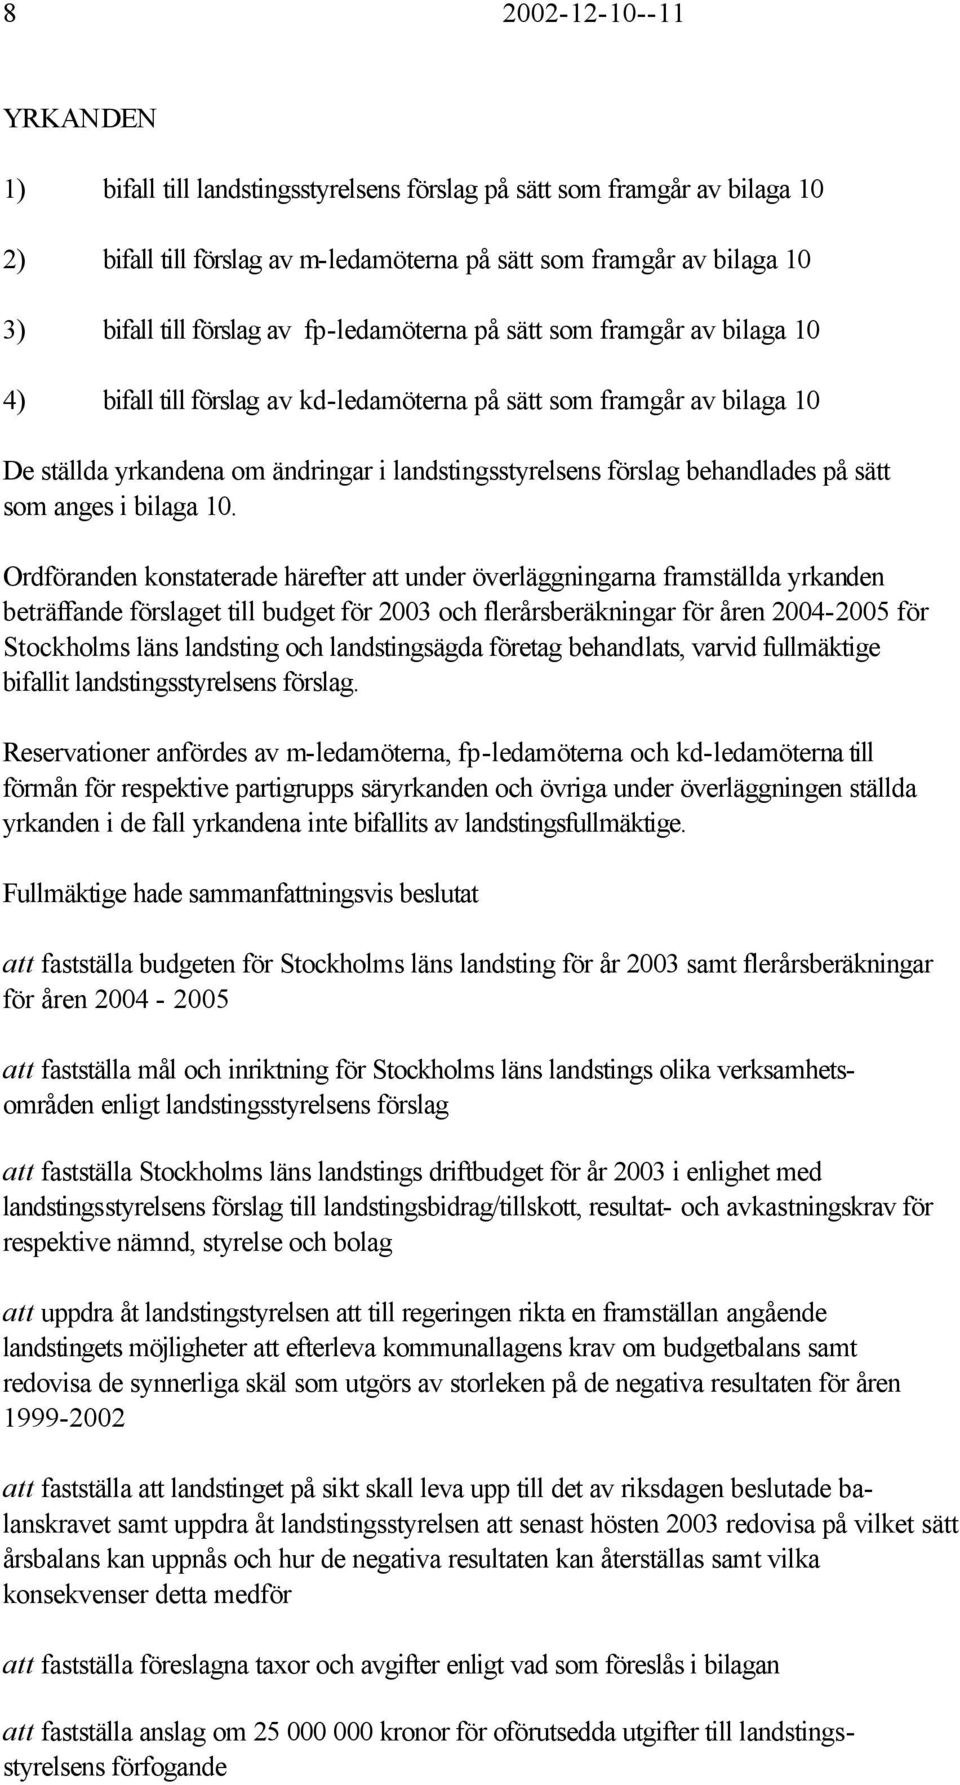 Ordföranden kontaterade härefter att under överläggningarna fratällda yrkanden beträffande förlaget till budget för 2003 och flerårberäkningar för åren 2004-2005 för Stockhol län landting och